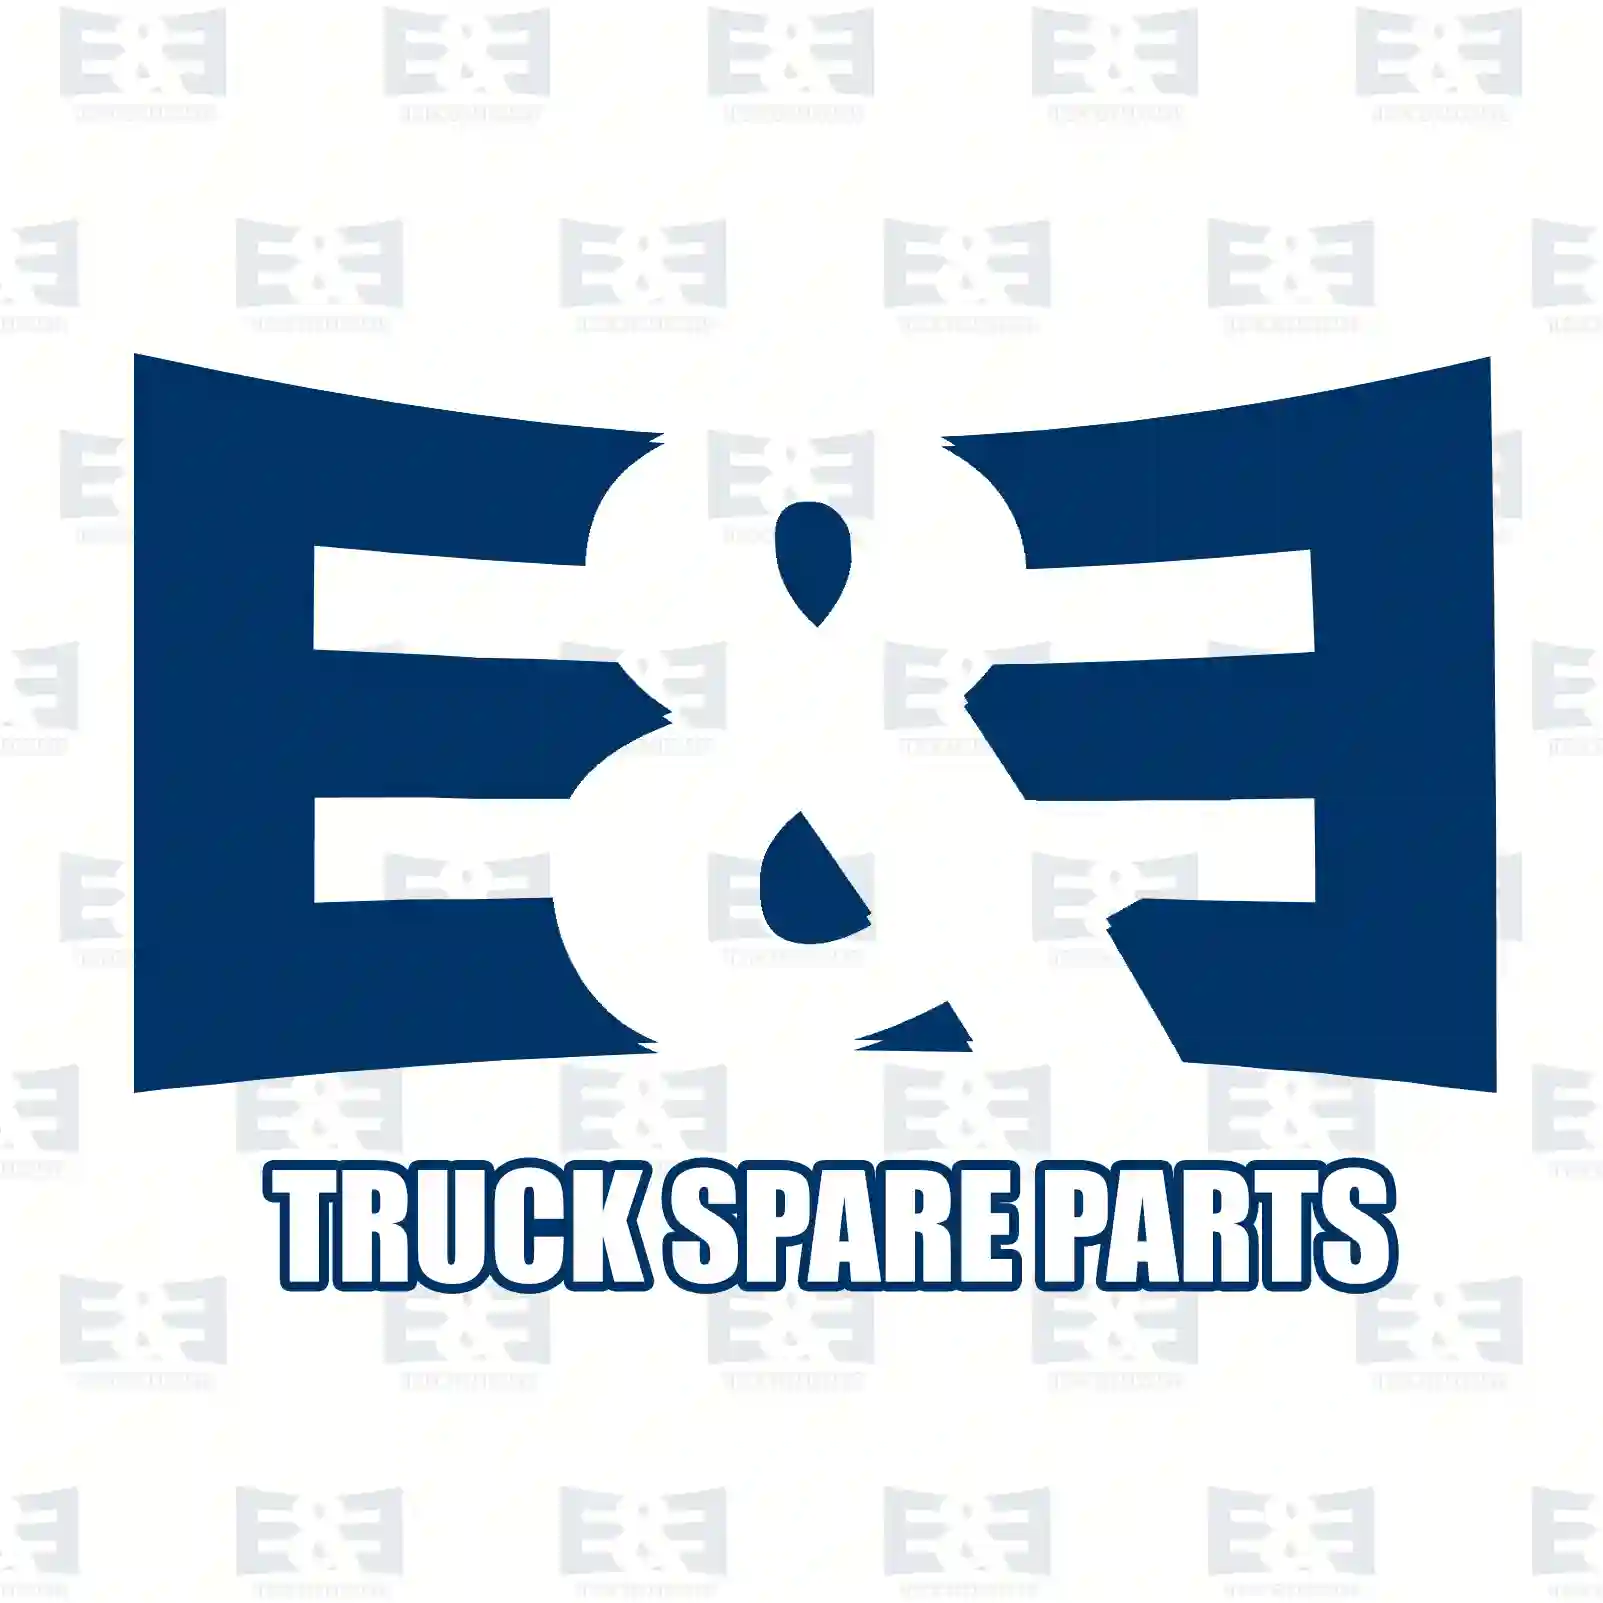 Compressor, air conditioning, oil filled, 2E2275240, 71721763, 9614674380, 6453GE, 6453P9, 6463P9, 9614674380, 71721763, 9614674380, 71721763, 9614674380, 6453GE, 6453P9, 6463P9, 9614674380 ||  2E2275240 E&E Truck Spare Parts | Truck Spare Parts, Auotomotive Spare Parts Compressor, air conditioning, oil filled, 2E2275240, 71721763, 9614674380, 6453GE, 6453P9, 6463P9, 9614674380, 71721763, 9614674380, 71721763, 9614674380, 6453GE, 6453P9, 6463P9, 9614674380 ||  2E2275240 E&E Truck Spare Parts | Truck Spare Parts, Auotomotive Spare Parts